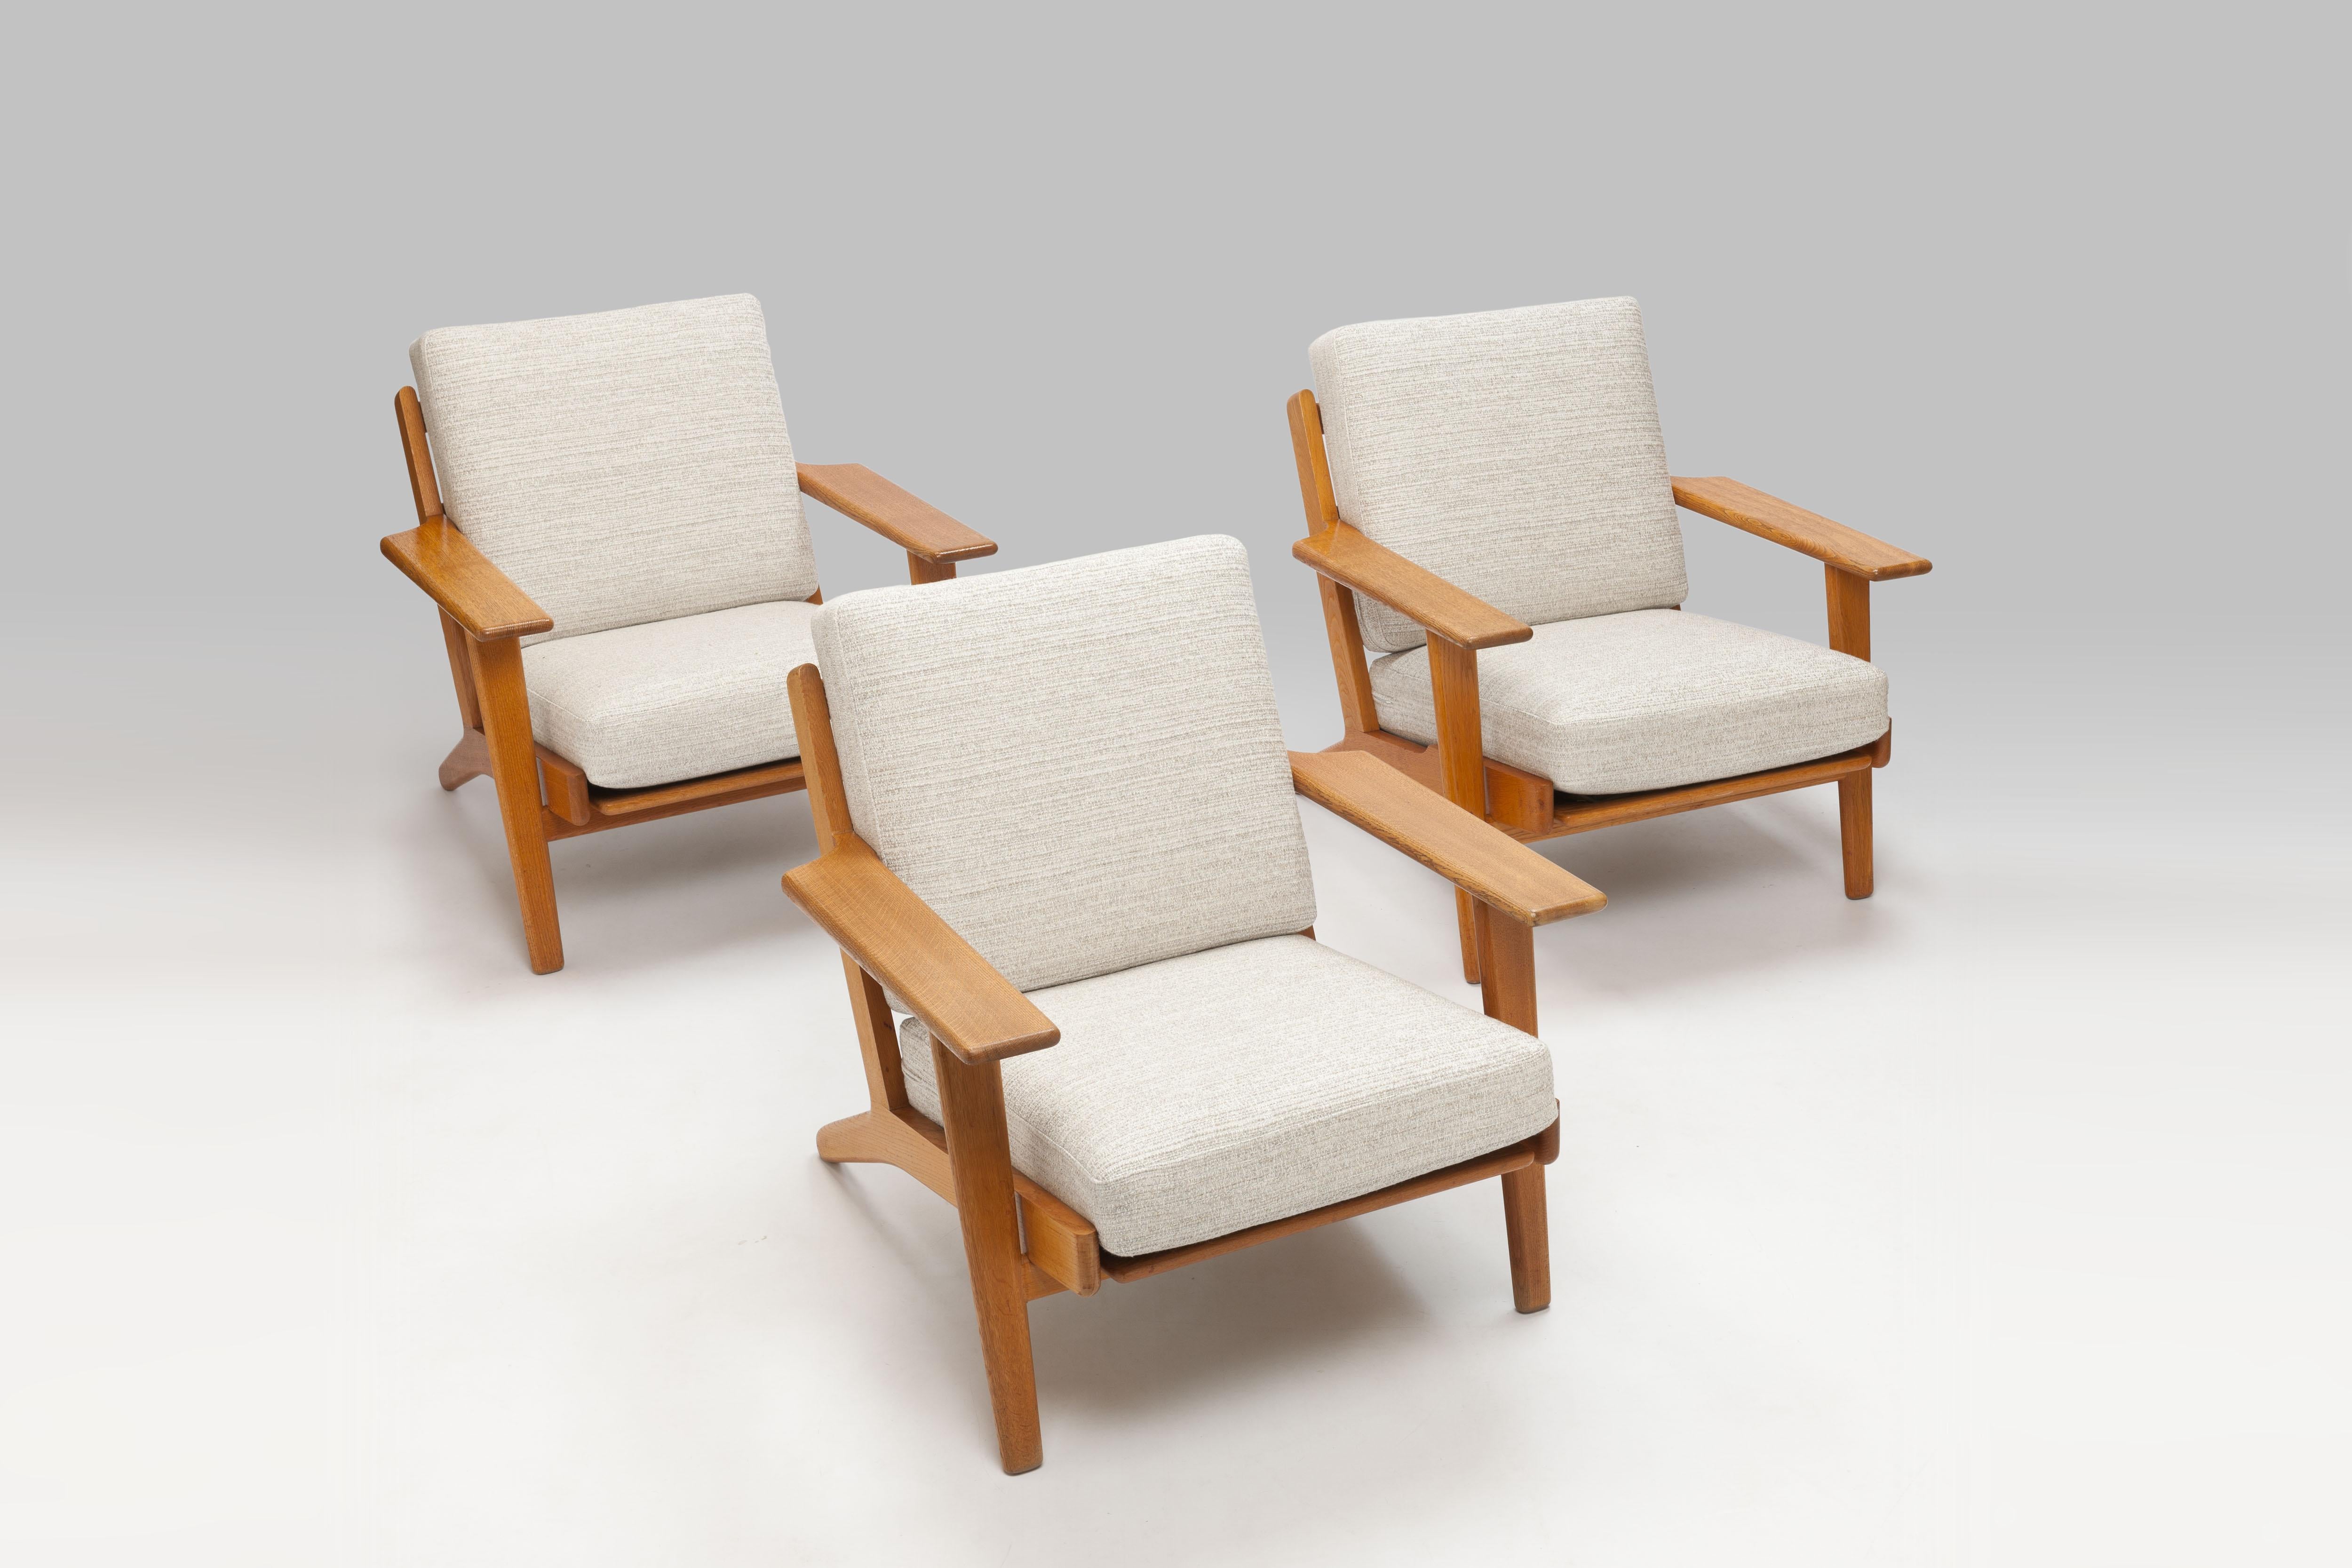 Hans Wegner Oak Lounge Chair GE290 by GETAMA '1 of 3 Chairs' 11